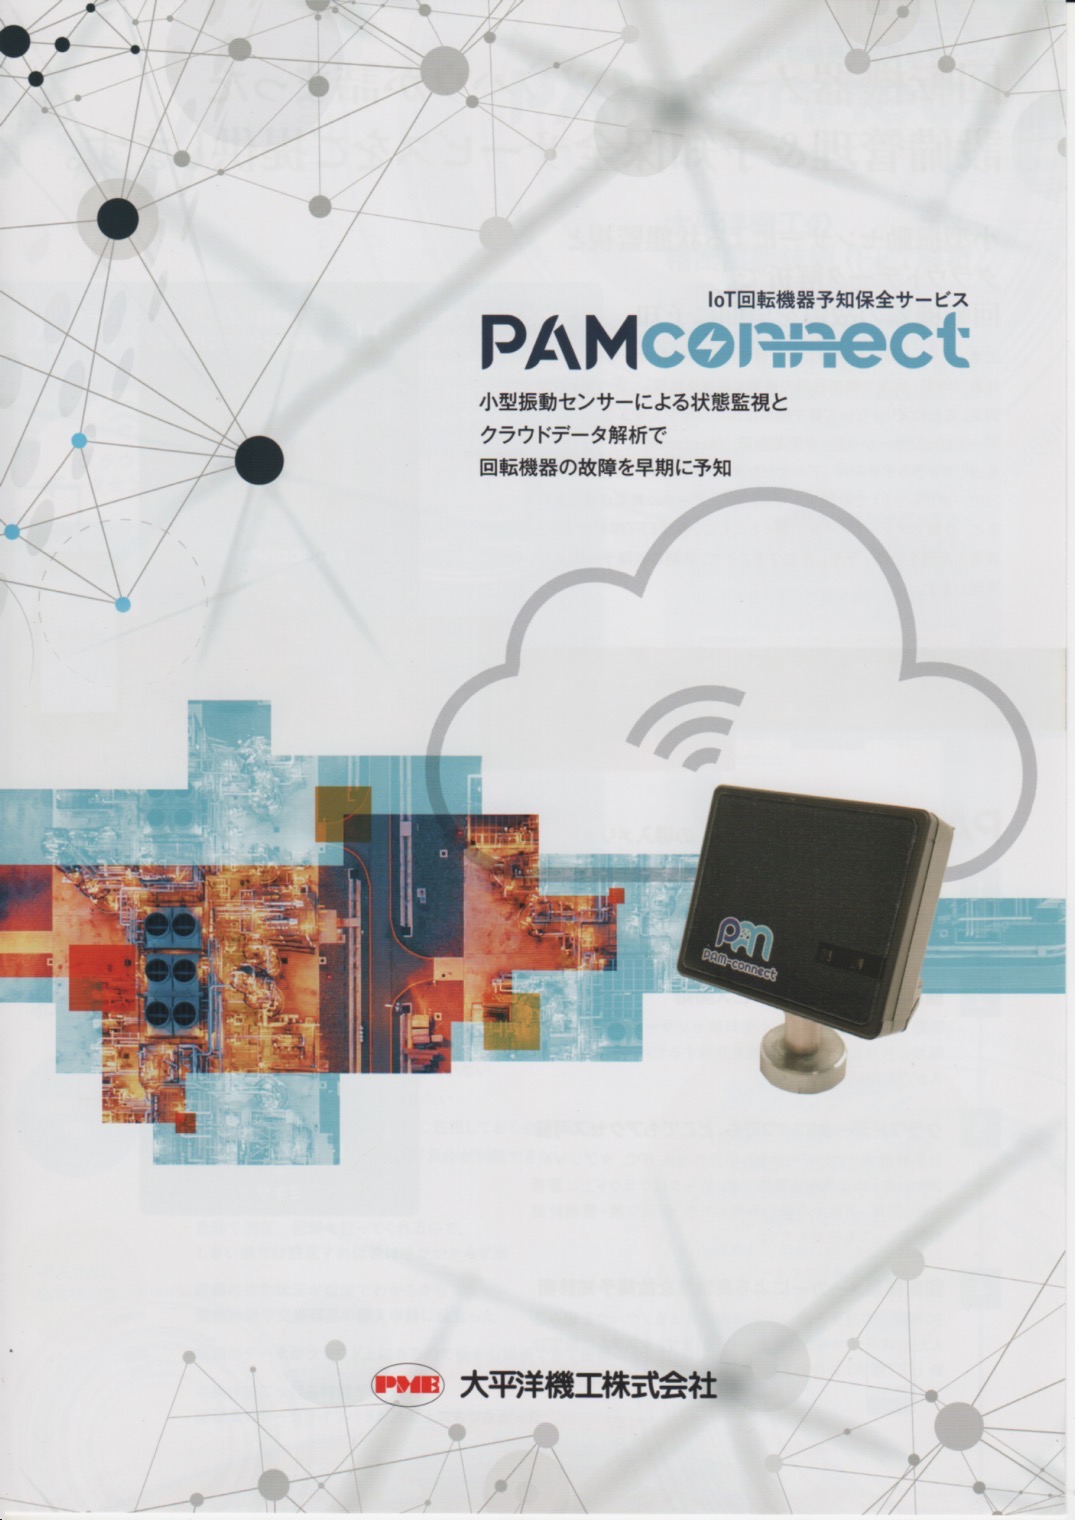 loT回転機器予知保全サービス PAMconnectのカタログ